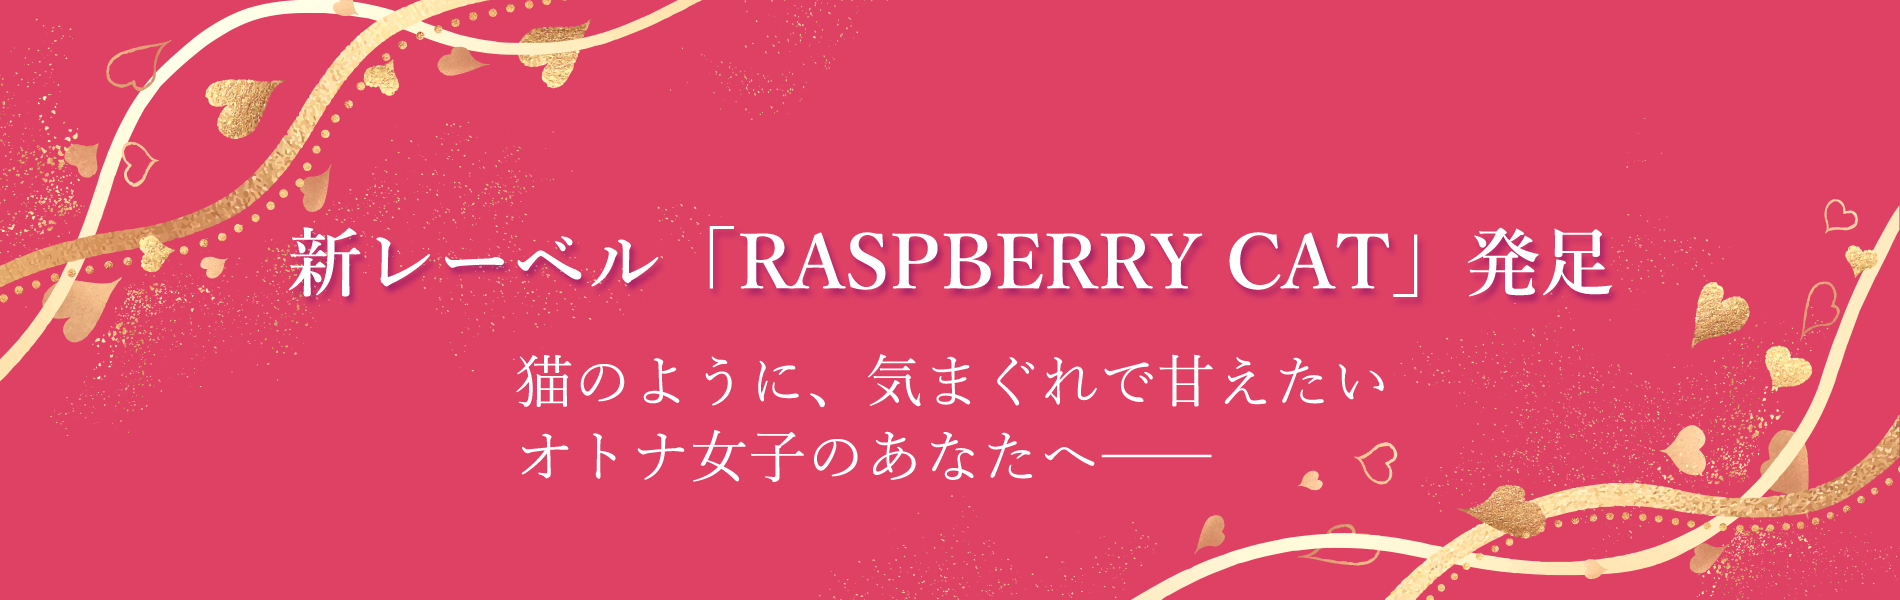 新レーベル「Raspberry Cat」発足　トップバナー